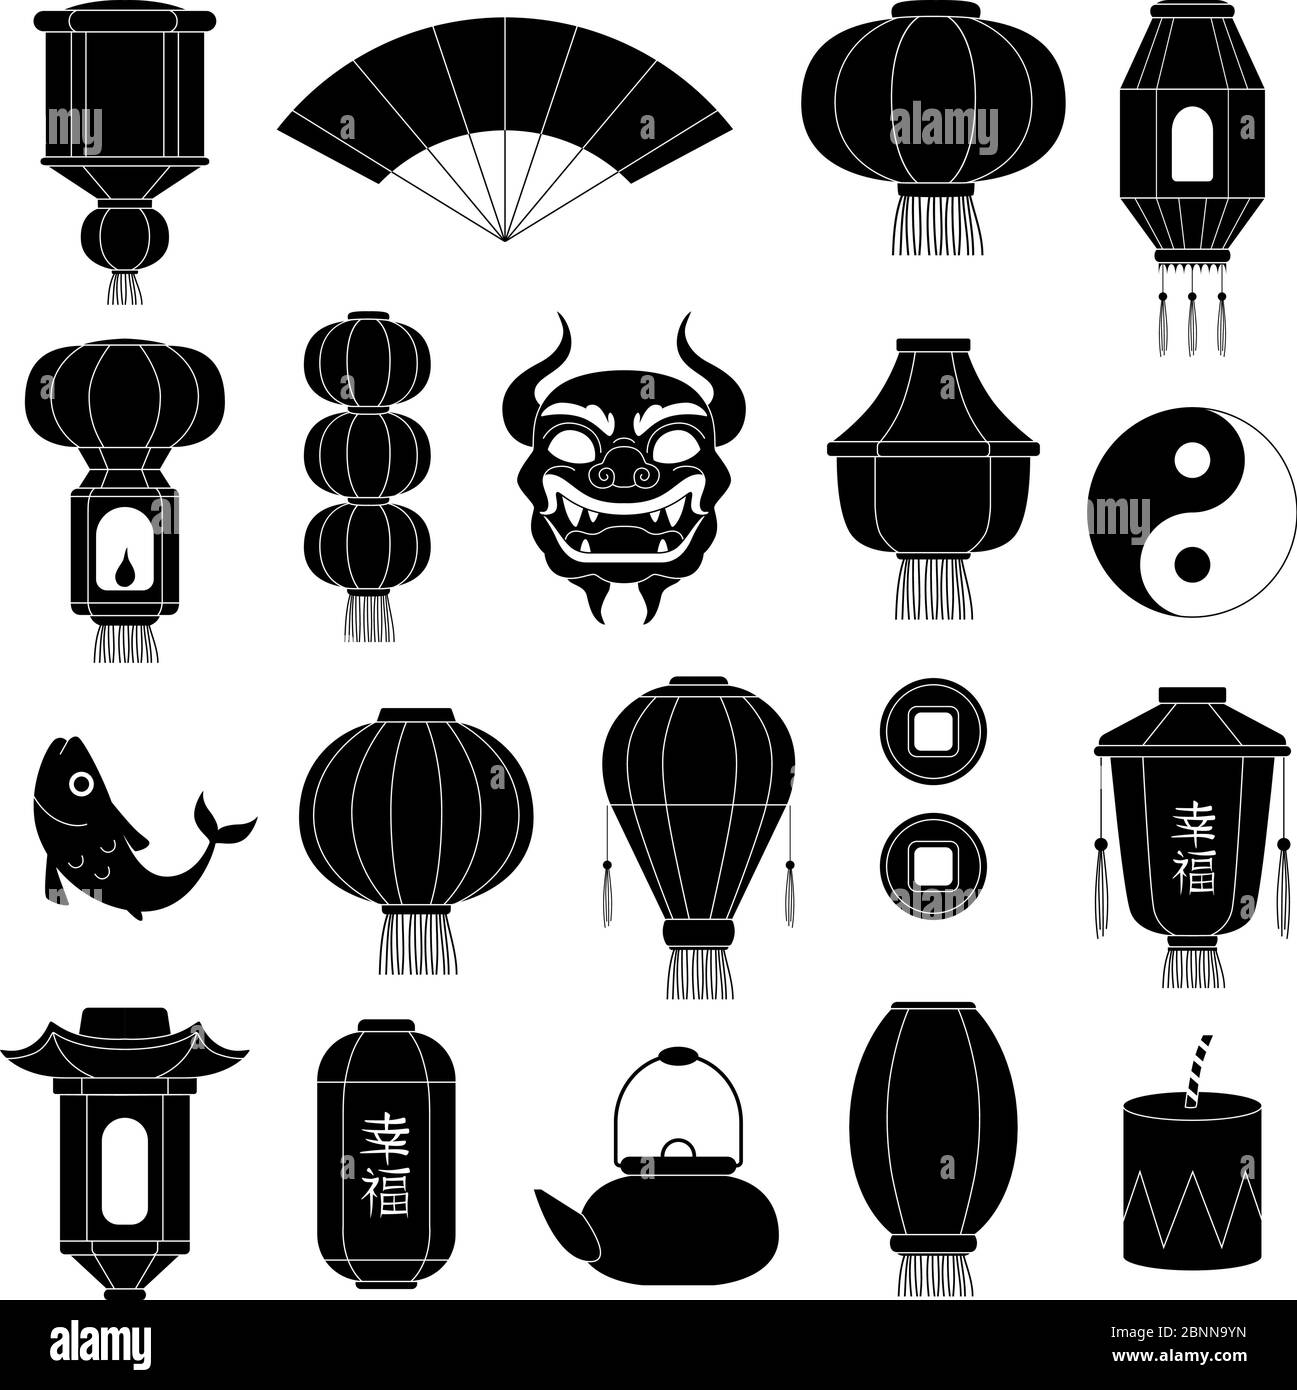 Silhouettes de symboles chinois. Lanternes en papier asiatique masque de poisson dragon traditionnel chine festive noir illustrations vectorielles Illustration de Vecteur